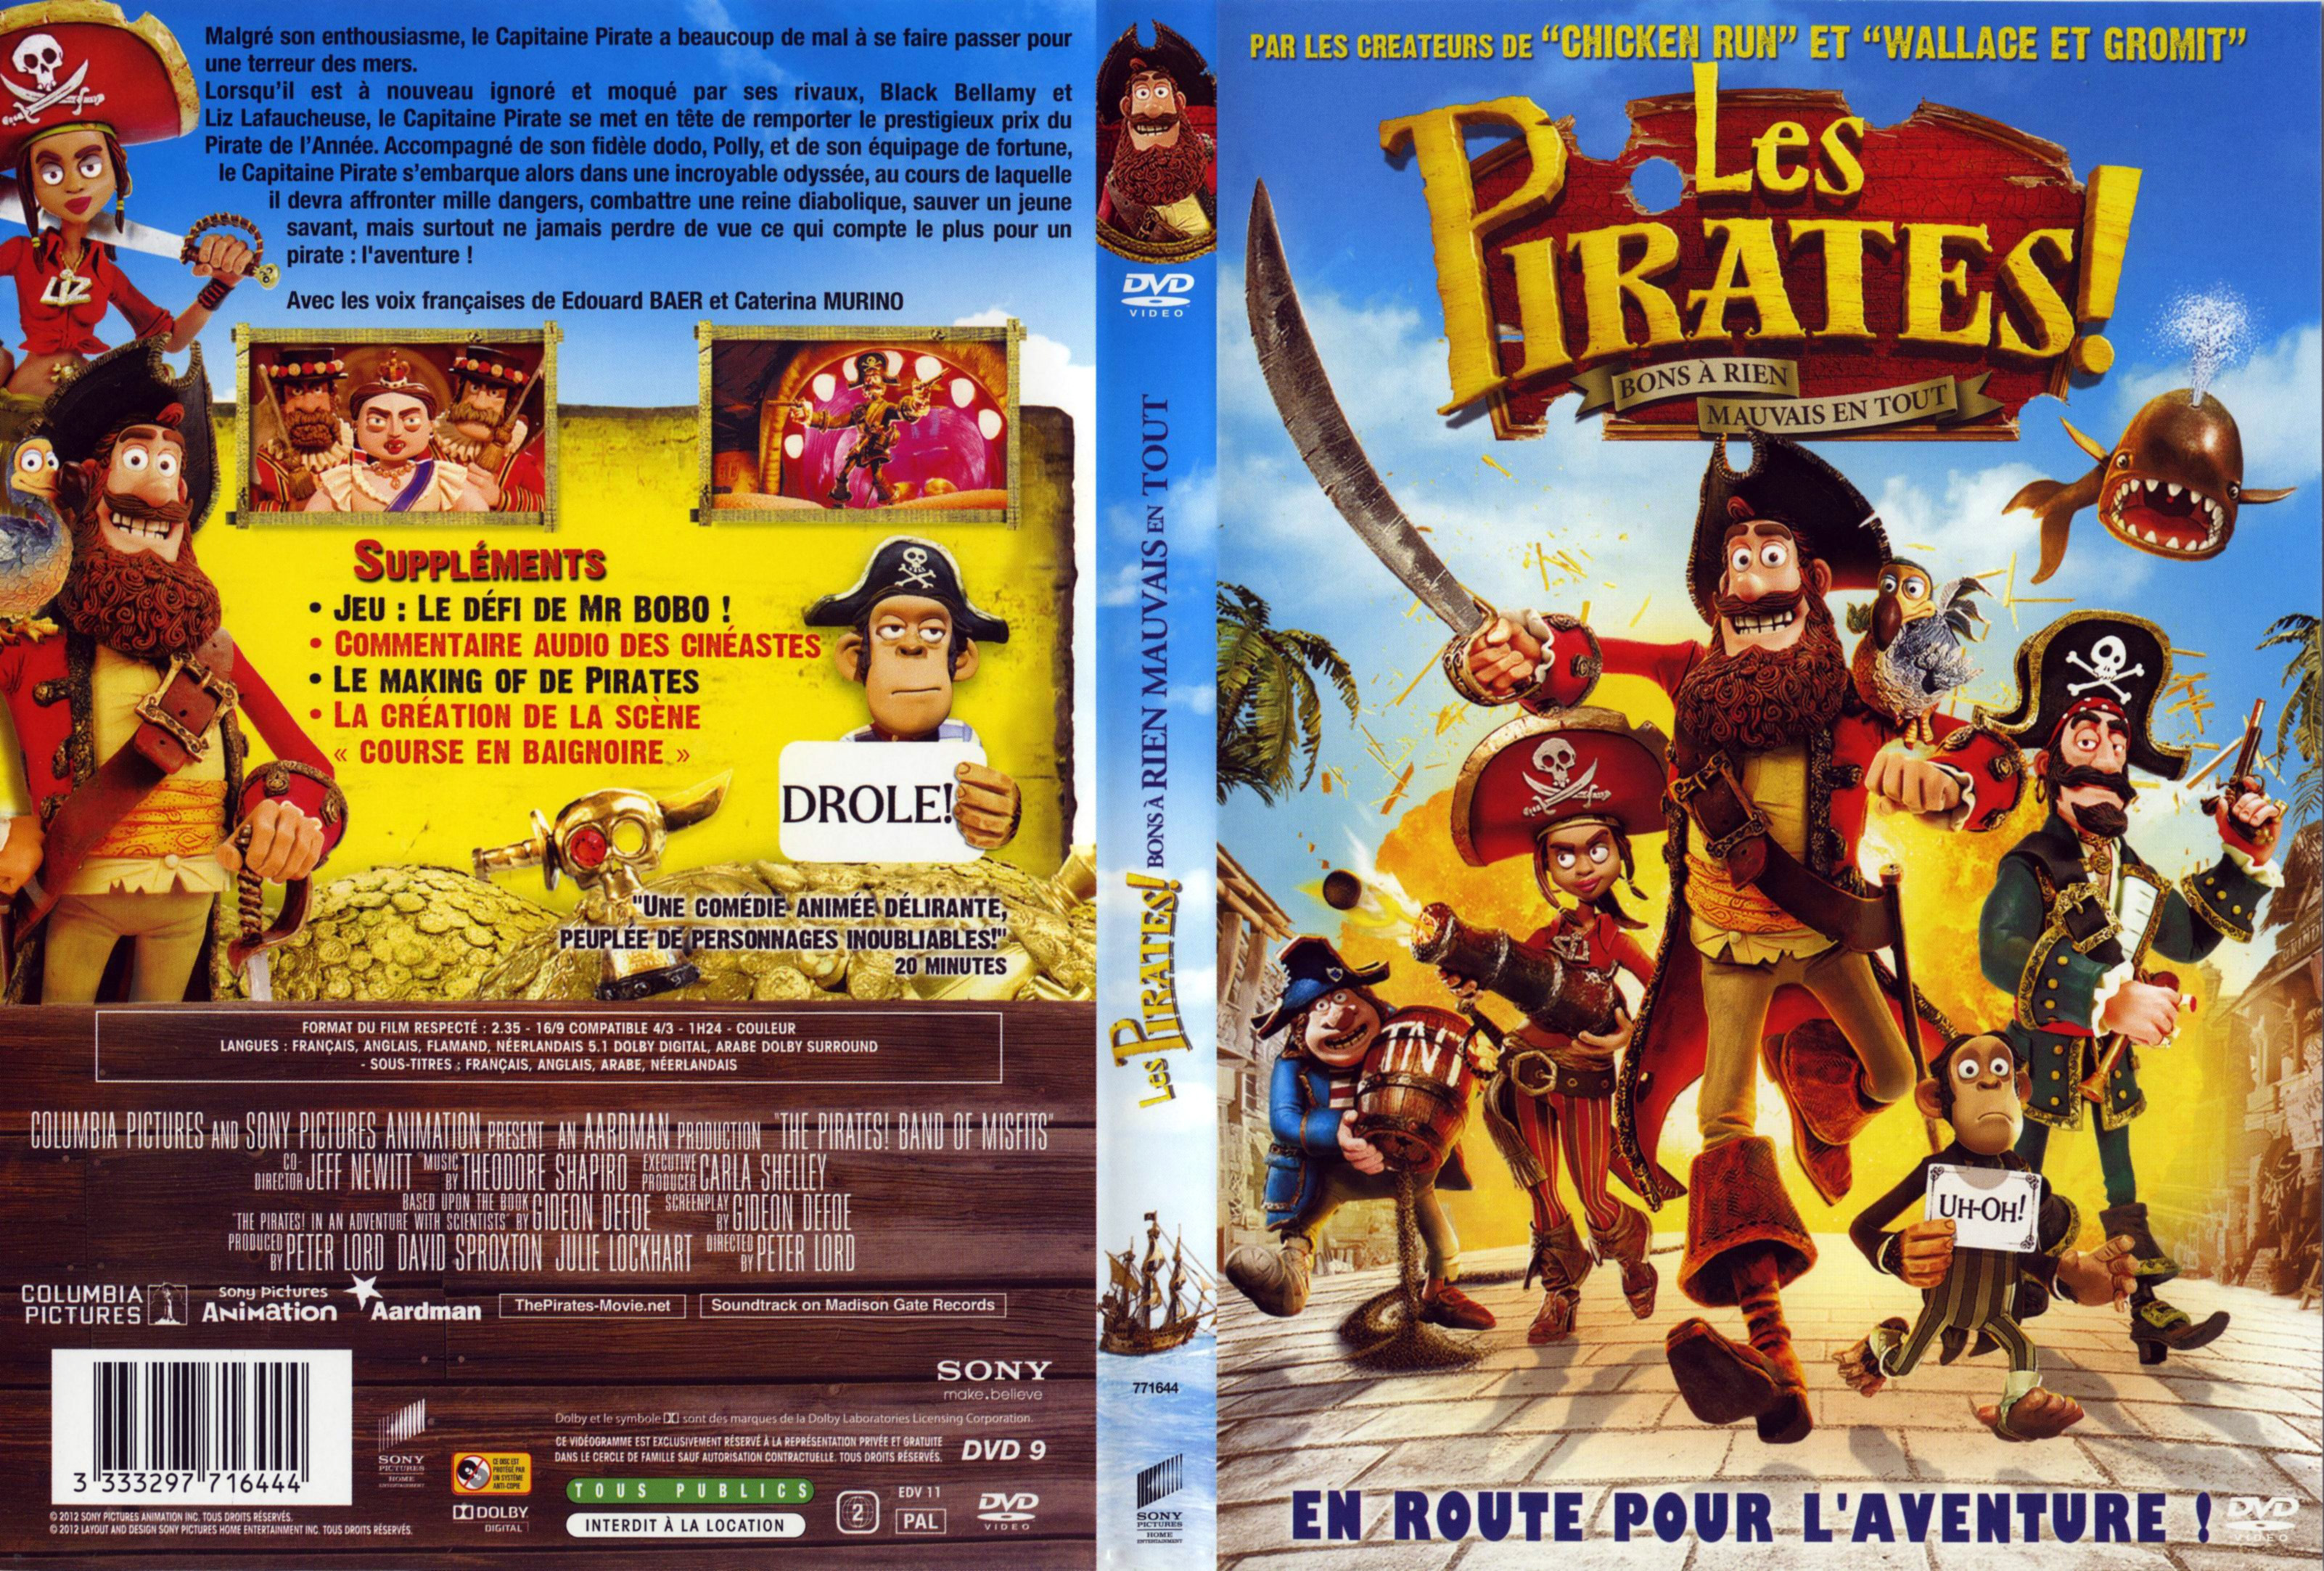 Jaquette DVD Les Pirates Bons  rien Mauvais en tout